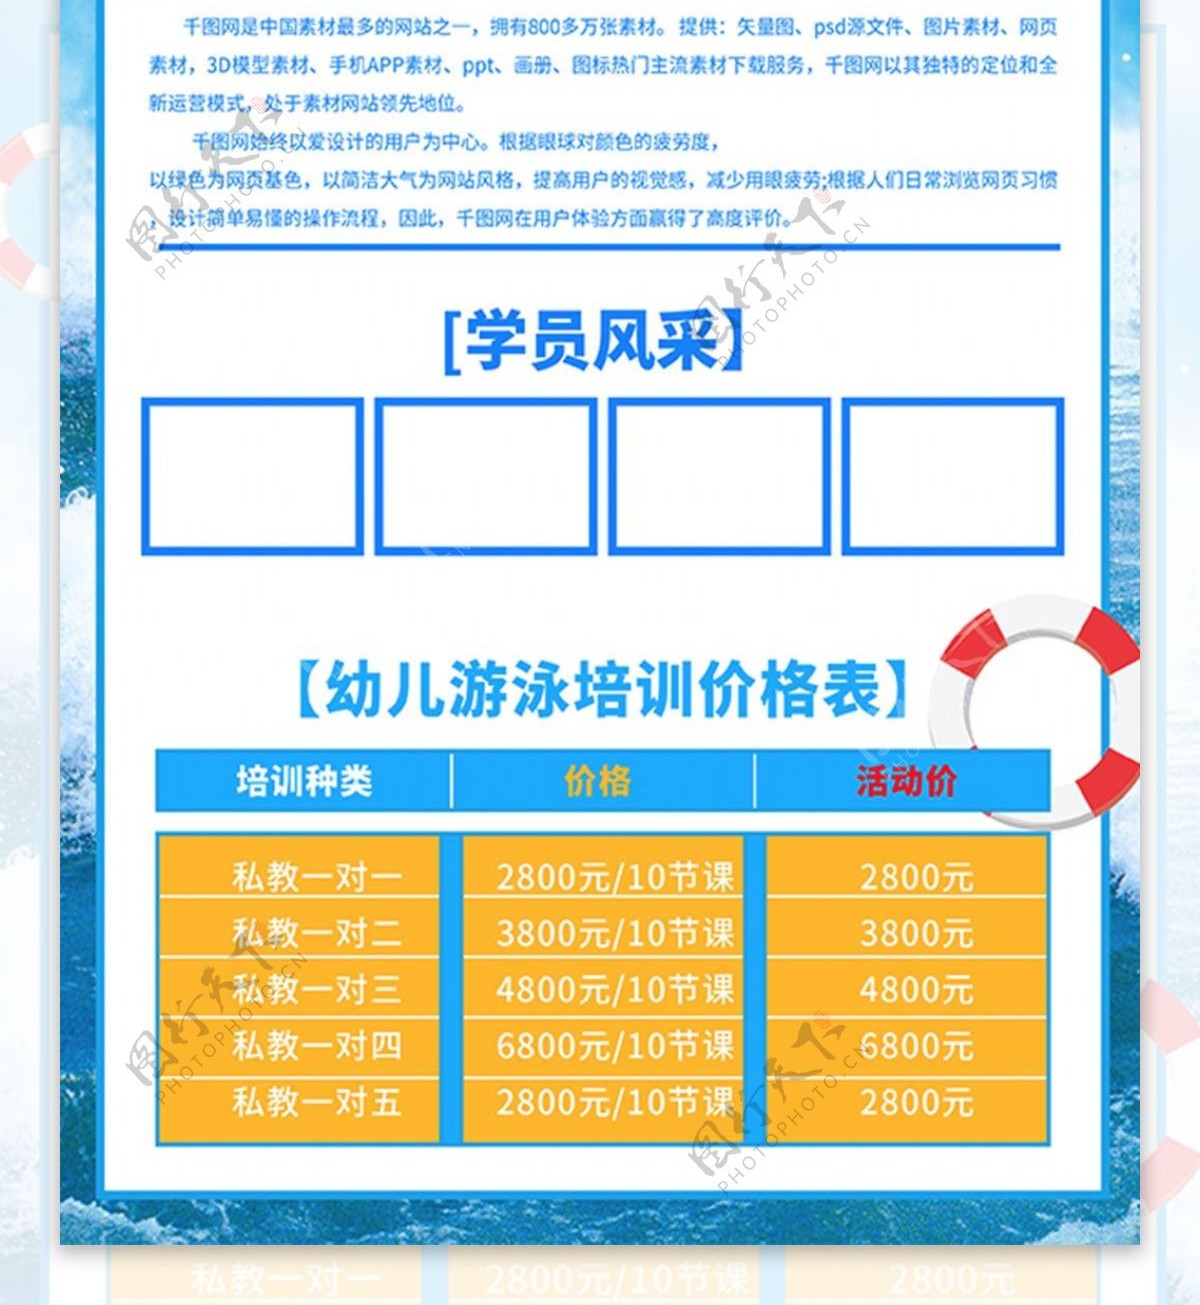 C4D专业游泳培训班招生蓝色宣传海报